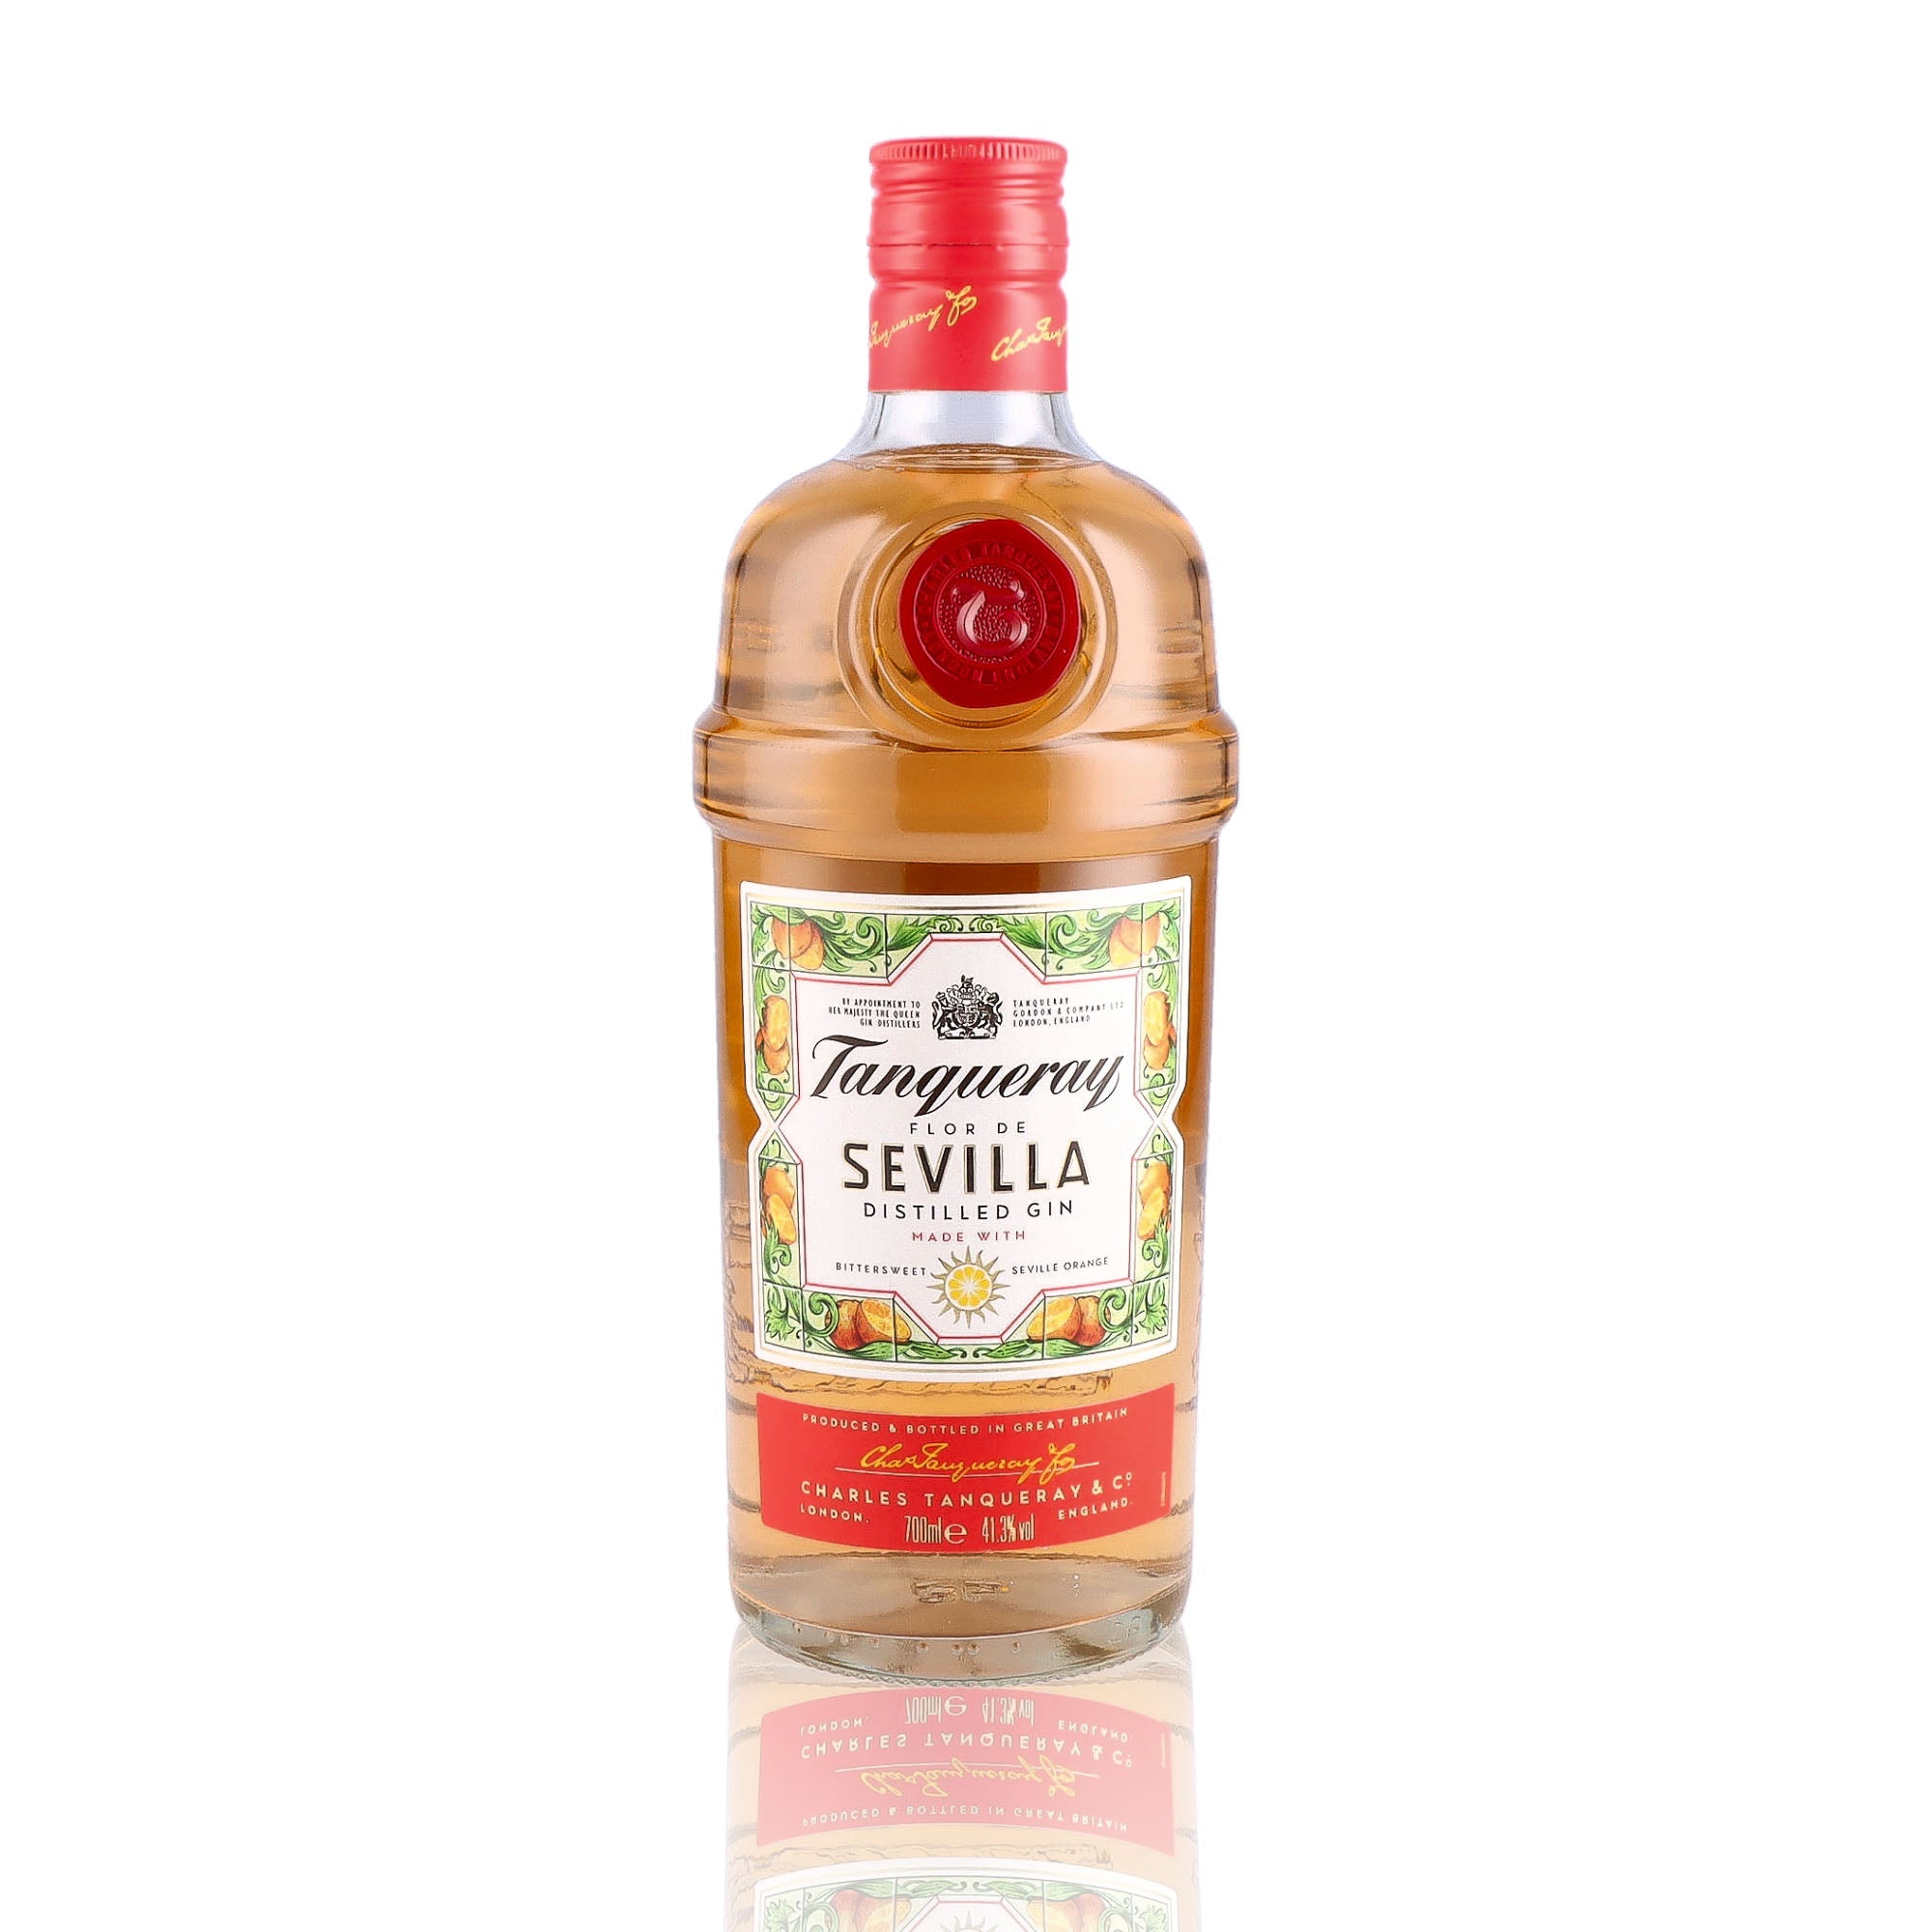 Une bouteille de Gin, de la marque Tanqueray, nommée Flor de Sevilla.